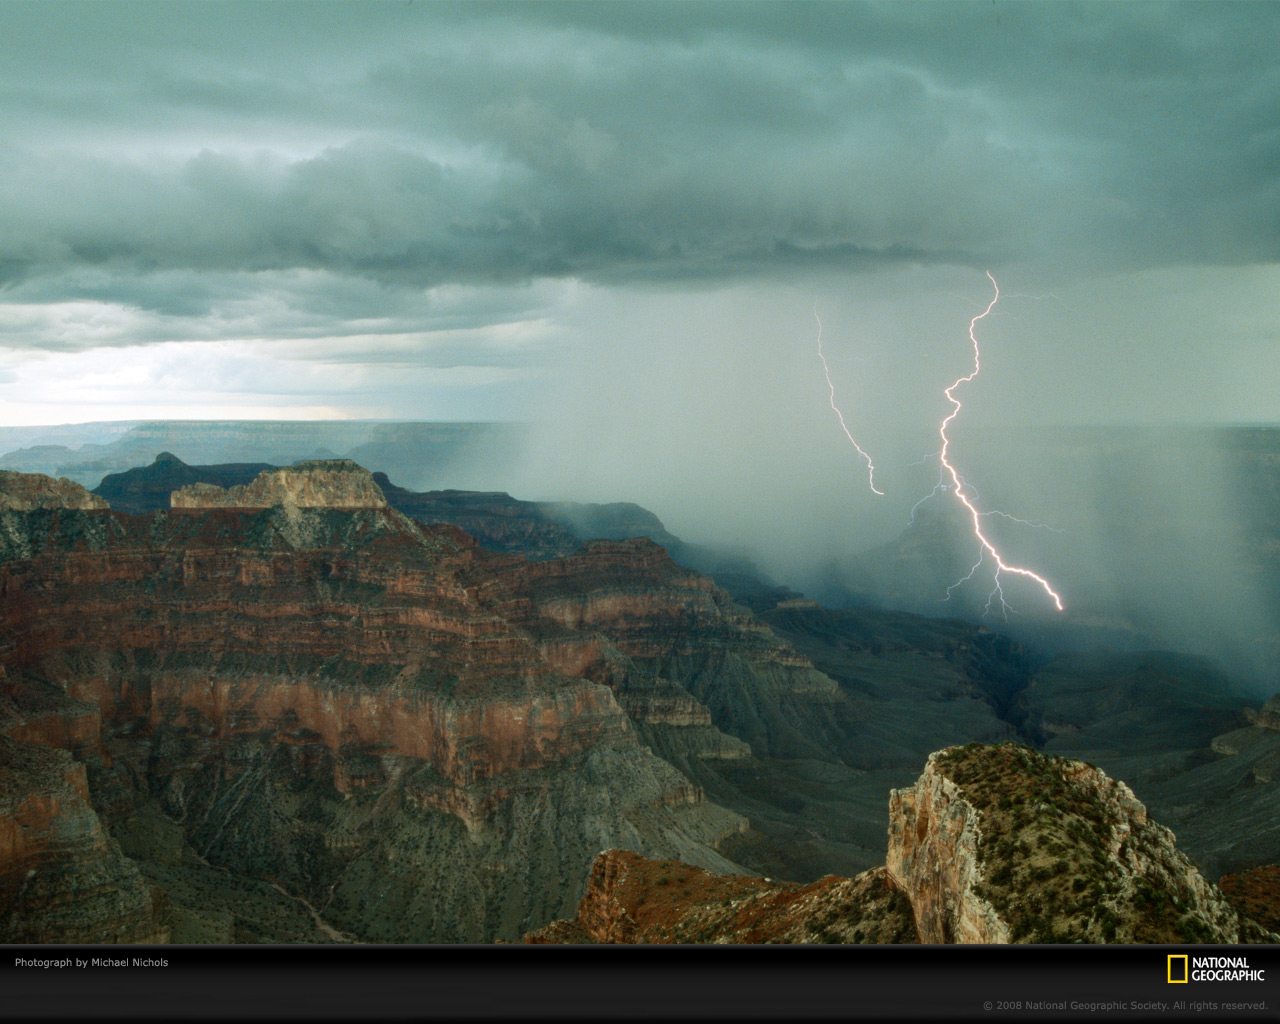 壁纸1280x1024透过镜头  Twin Bolts of Lightning Grand Canyon Arizona 大峡谷闪电桌面壁纸壁纸 国家地理杂志2008年度最佳图片壁纸 国家地理杂志2008年度最佳图片图片 国家地理杂志2008年度最佳图片素材 人文壁纸 人文图库 人文图片素材桌面壁纸